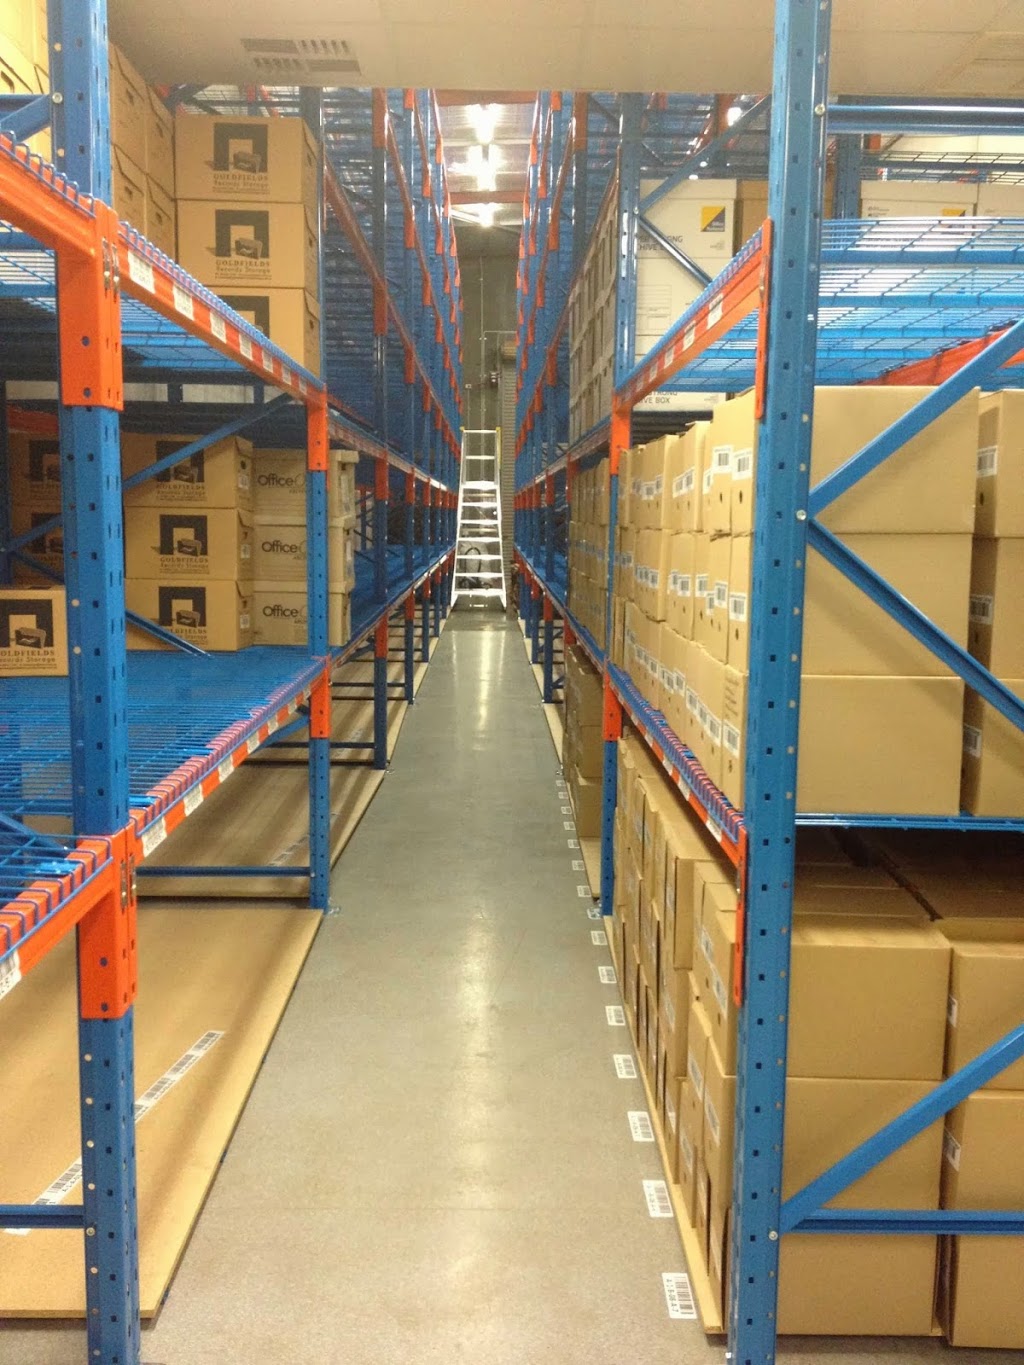 Goldfields Records Storage | storage | 2/12 Federal Rd, Kalgoorlie WA 6430, Australia | 0890217349 OR +61 8 9021 7349